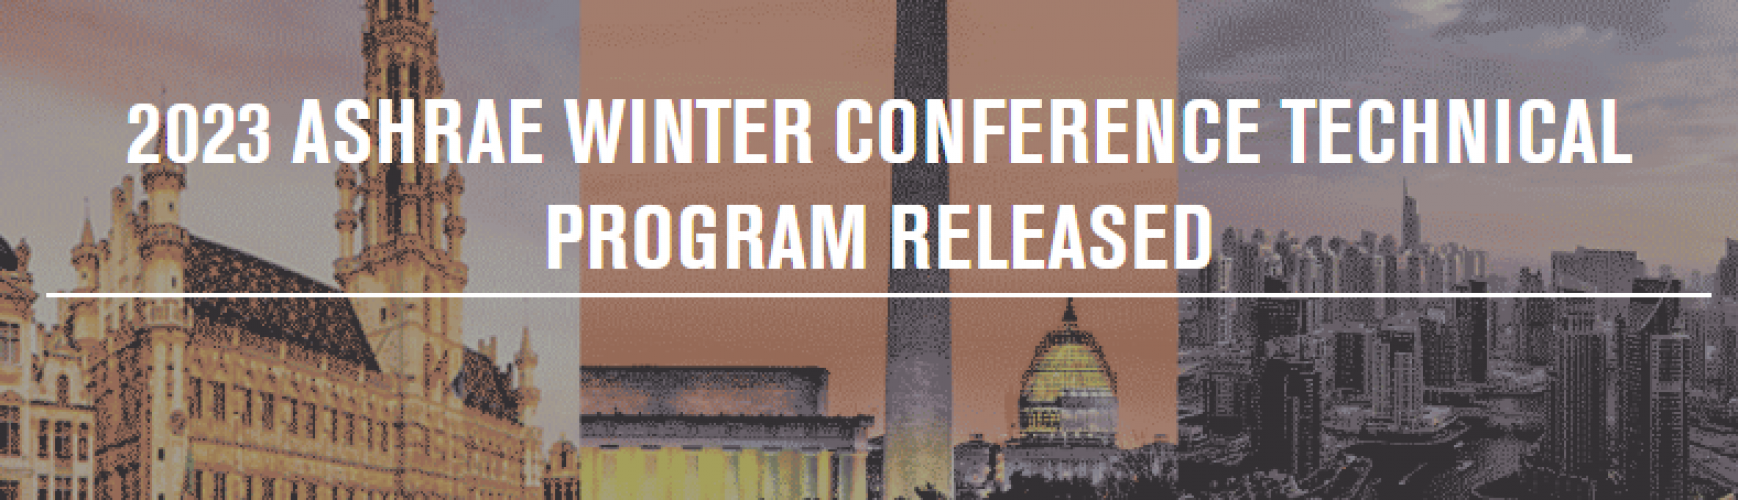 Lanzamiento del programa técnico de la conferencia de invierno ASHRAE 2023